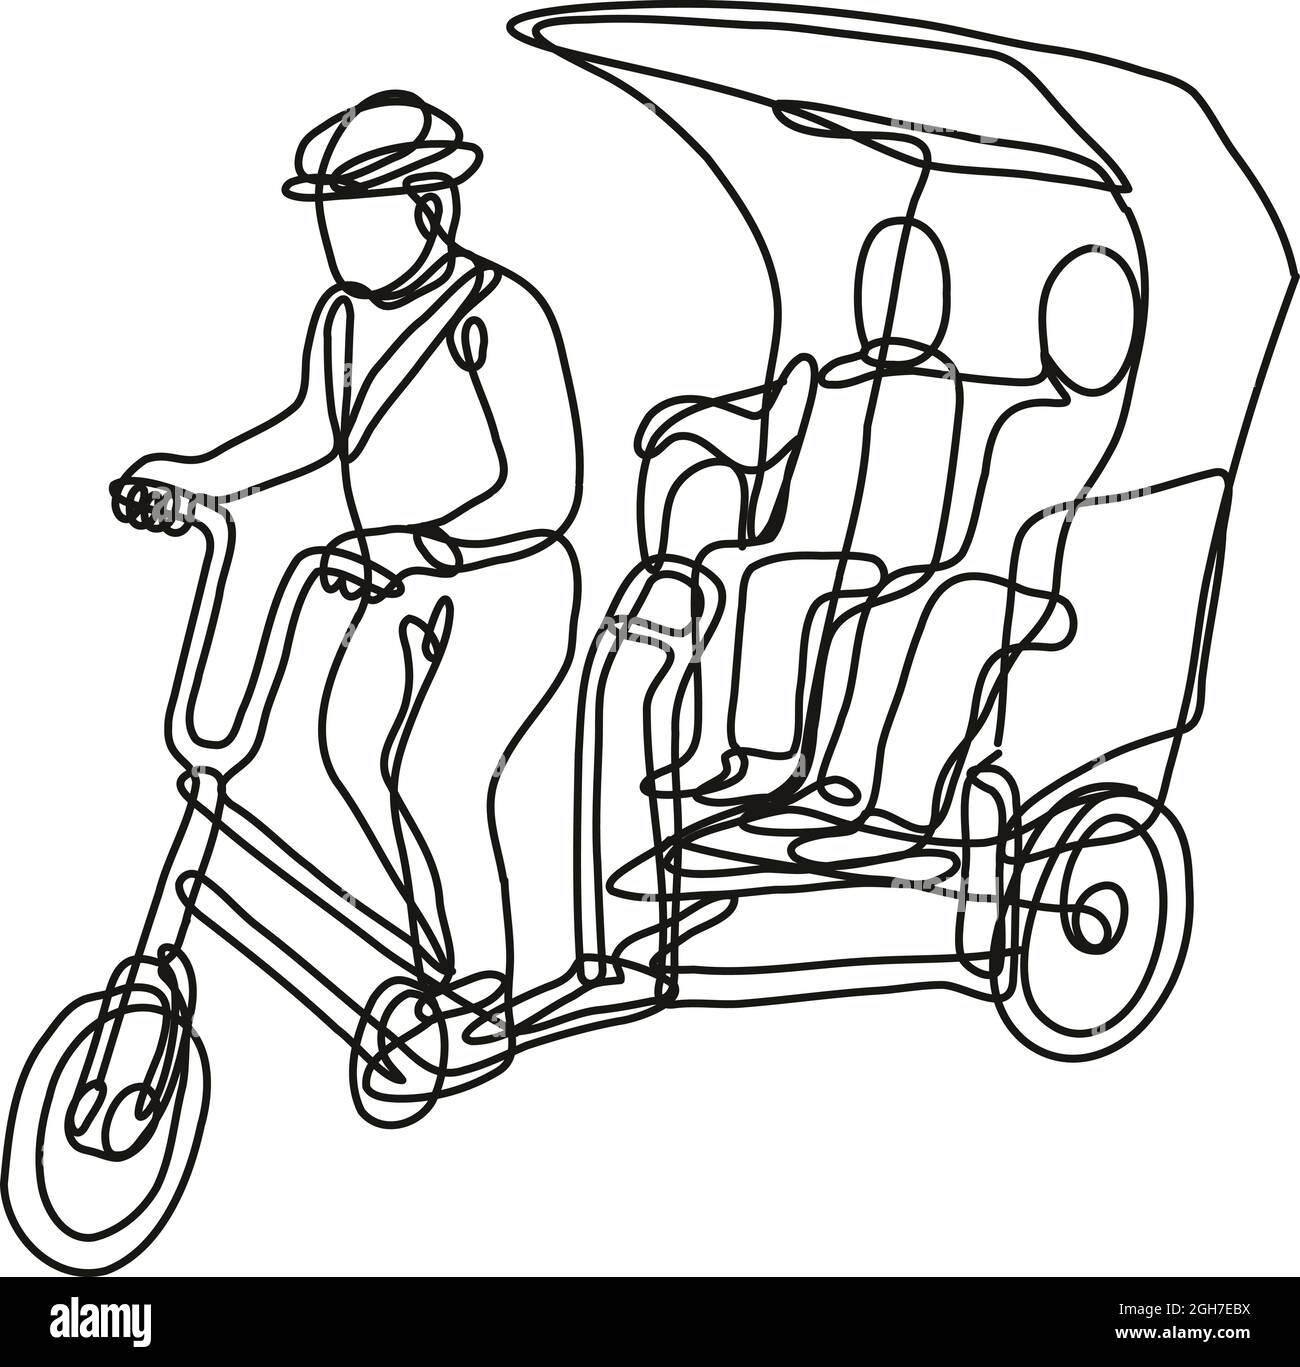 Fortlaufende Linienzeichnung Illustration eines toktok Tok Tok oder 3 Rad Dreirad Bikes in mono line oder Doodle Stil in schwarz und weiß auf isoliertem Bac gemacht Stock Vektor